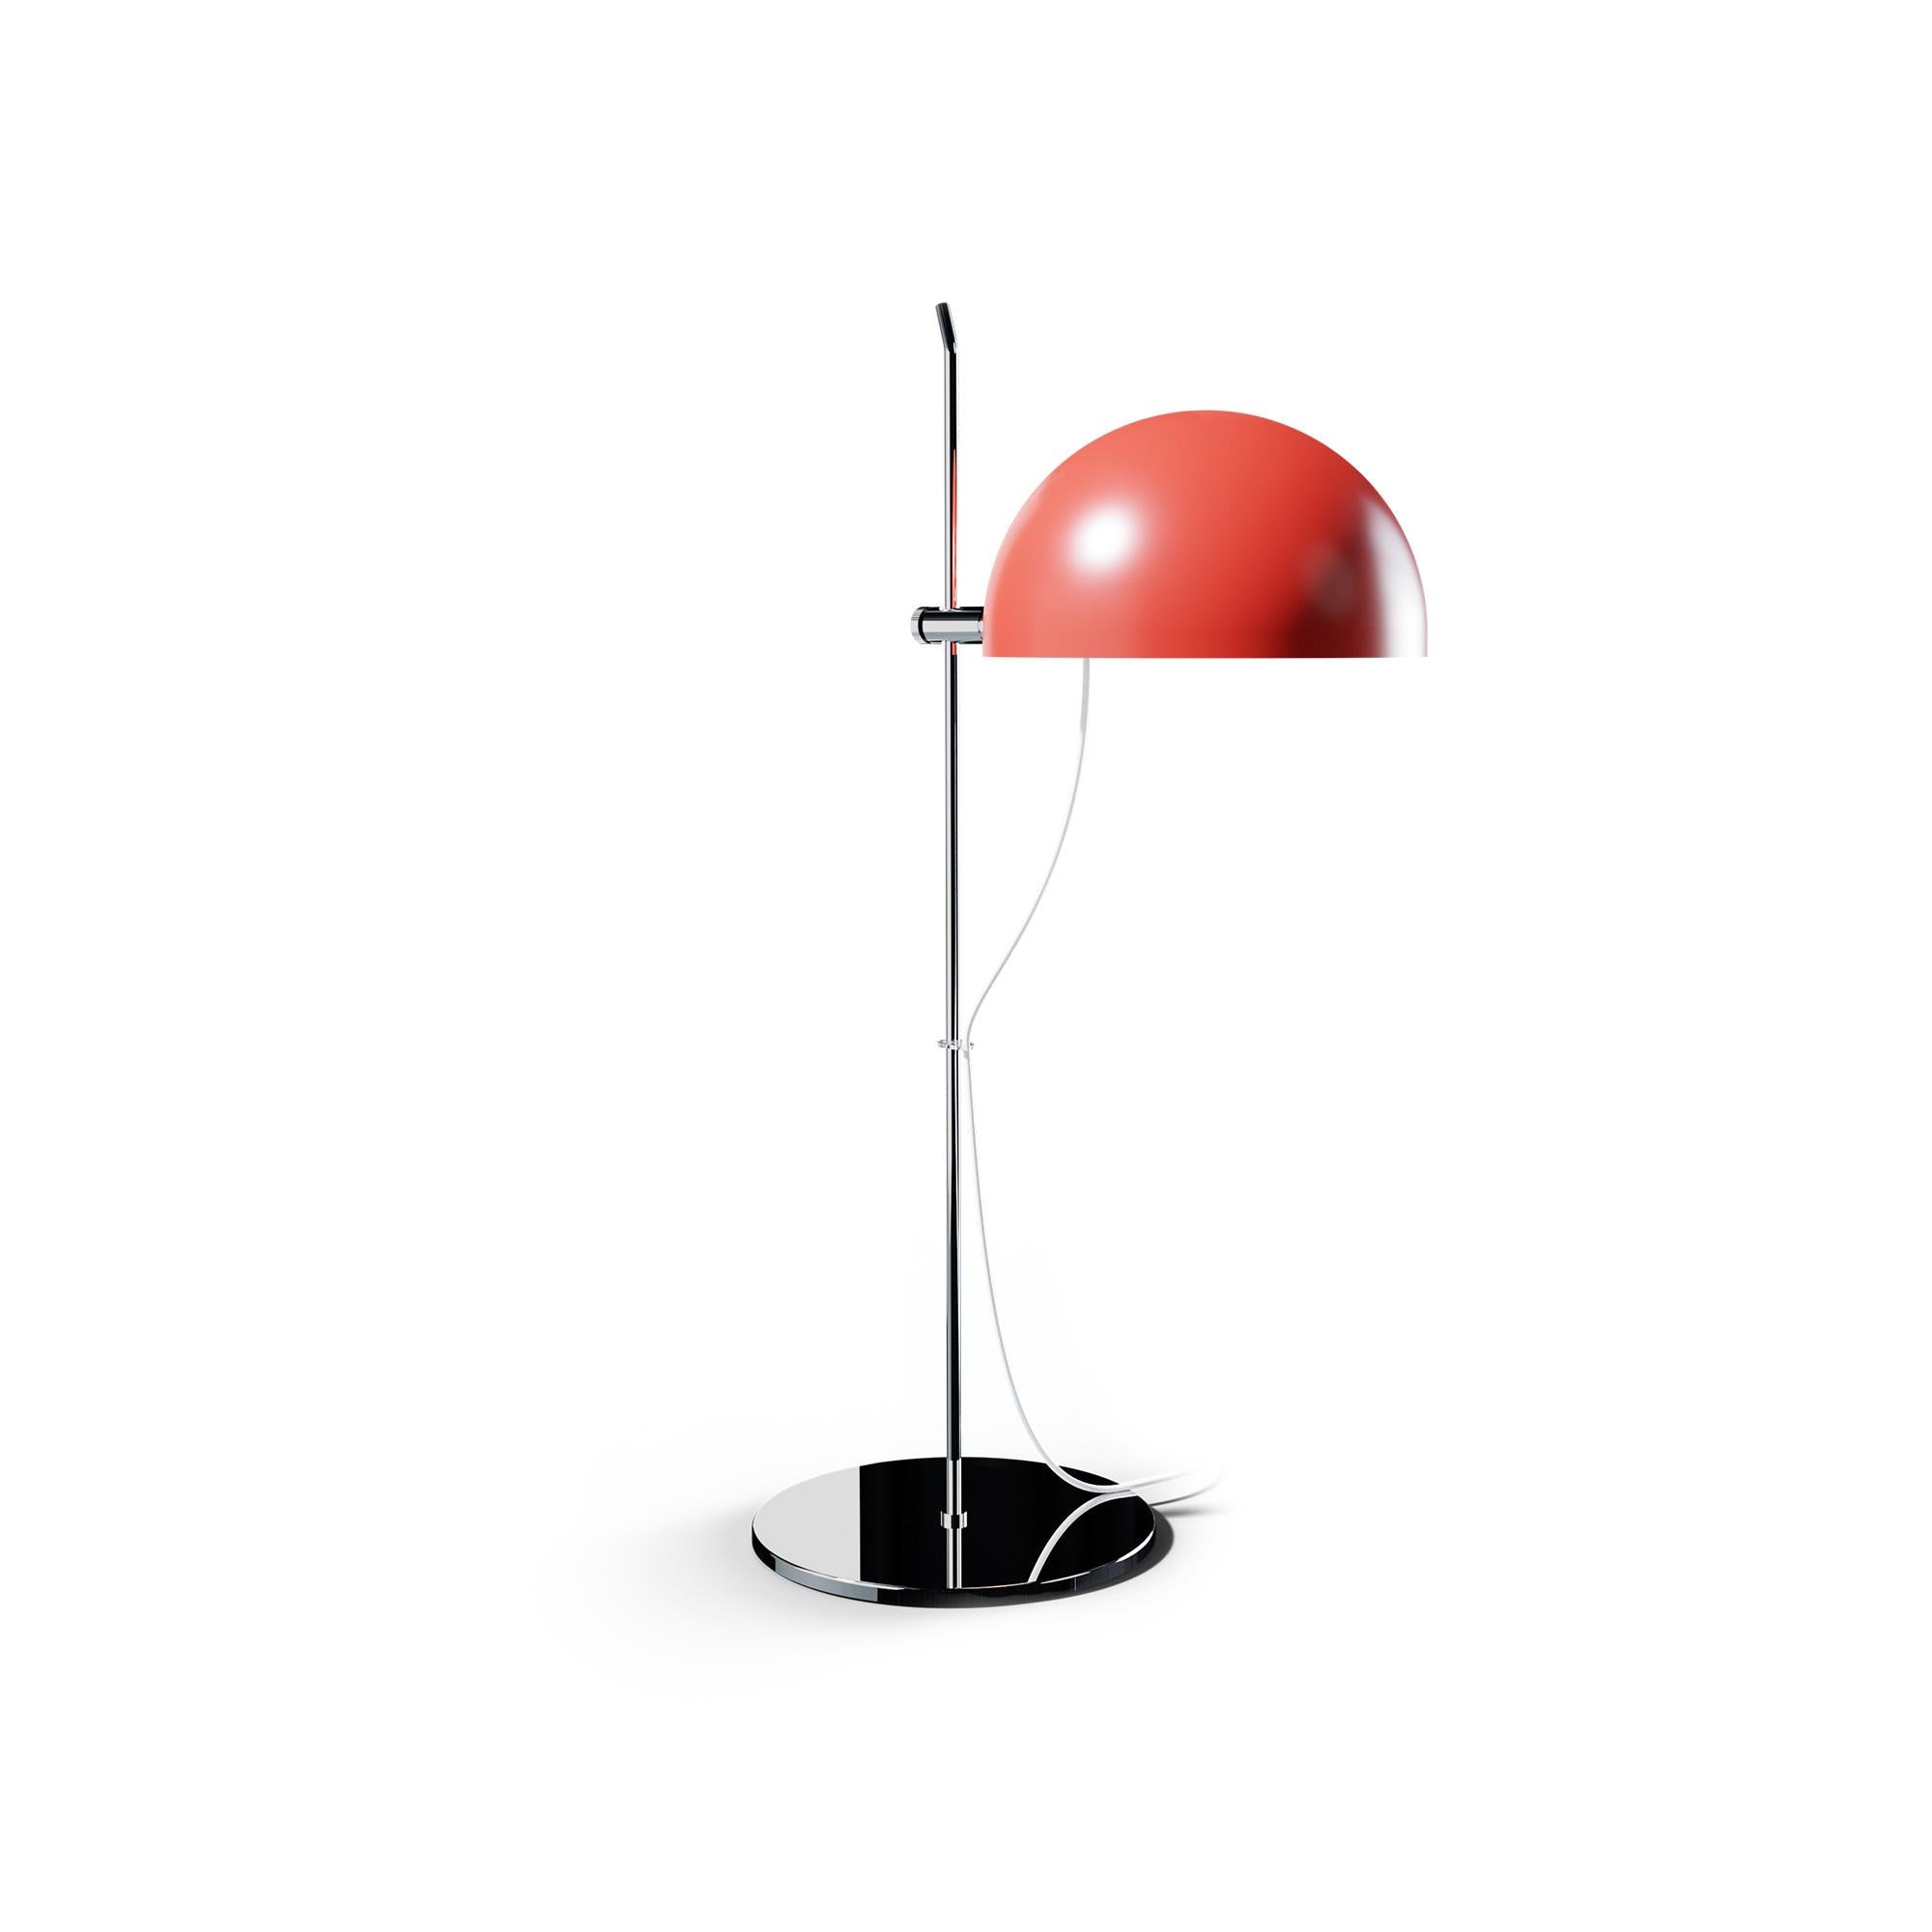 Alain Richard 'A21' Desk Lamp in Chrome for Disderot For Sale 4